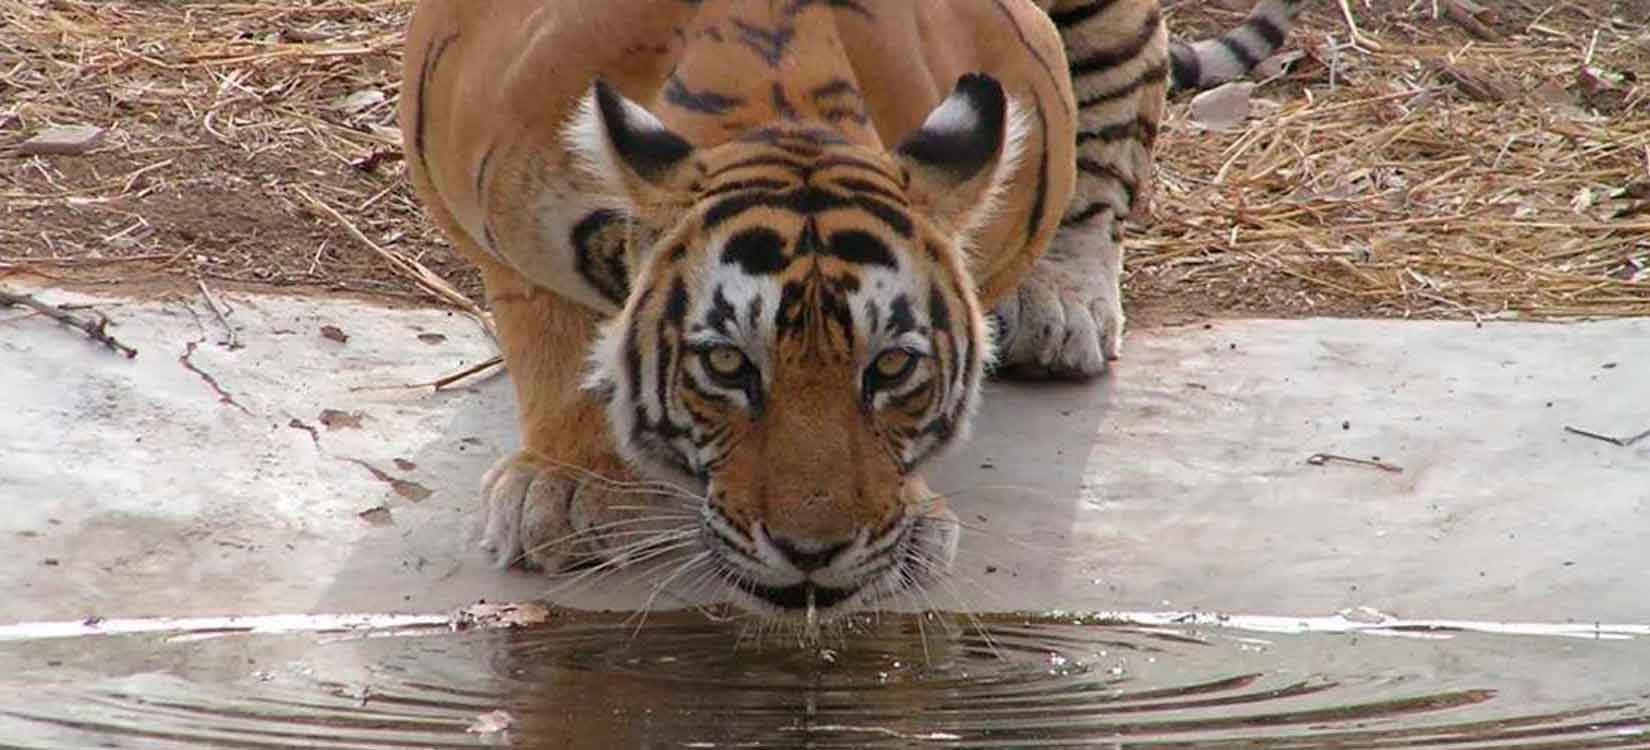 Tigers at Ranthambhore National Park